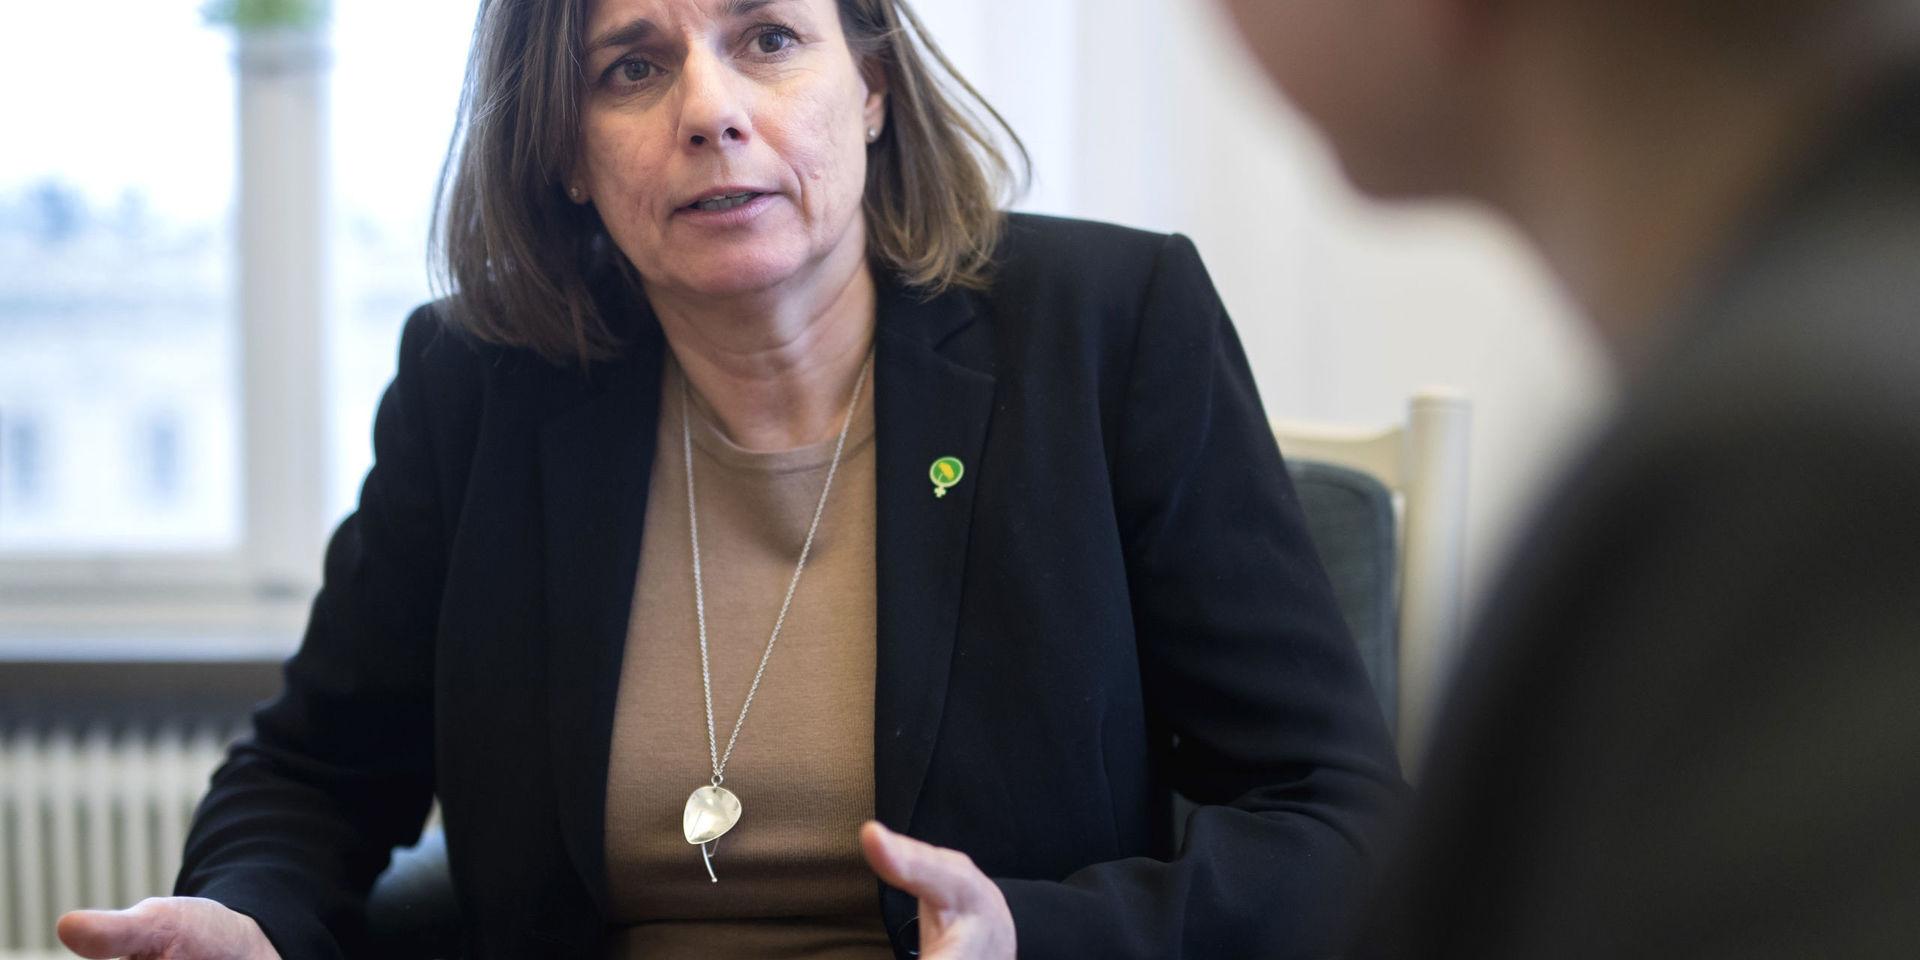 Språkröret och klimatministern Isabella Lövin (MP) har flugit för 1,5 miljoner kronor under mandatperioden, enligt Expressen.